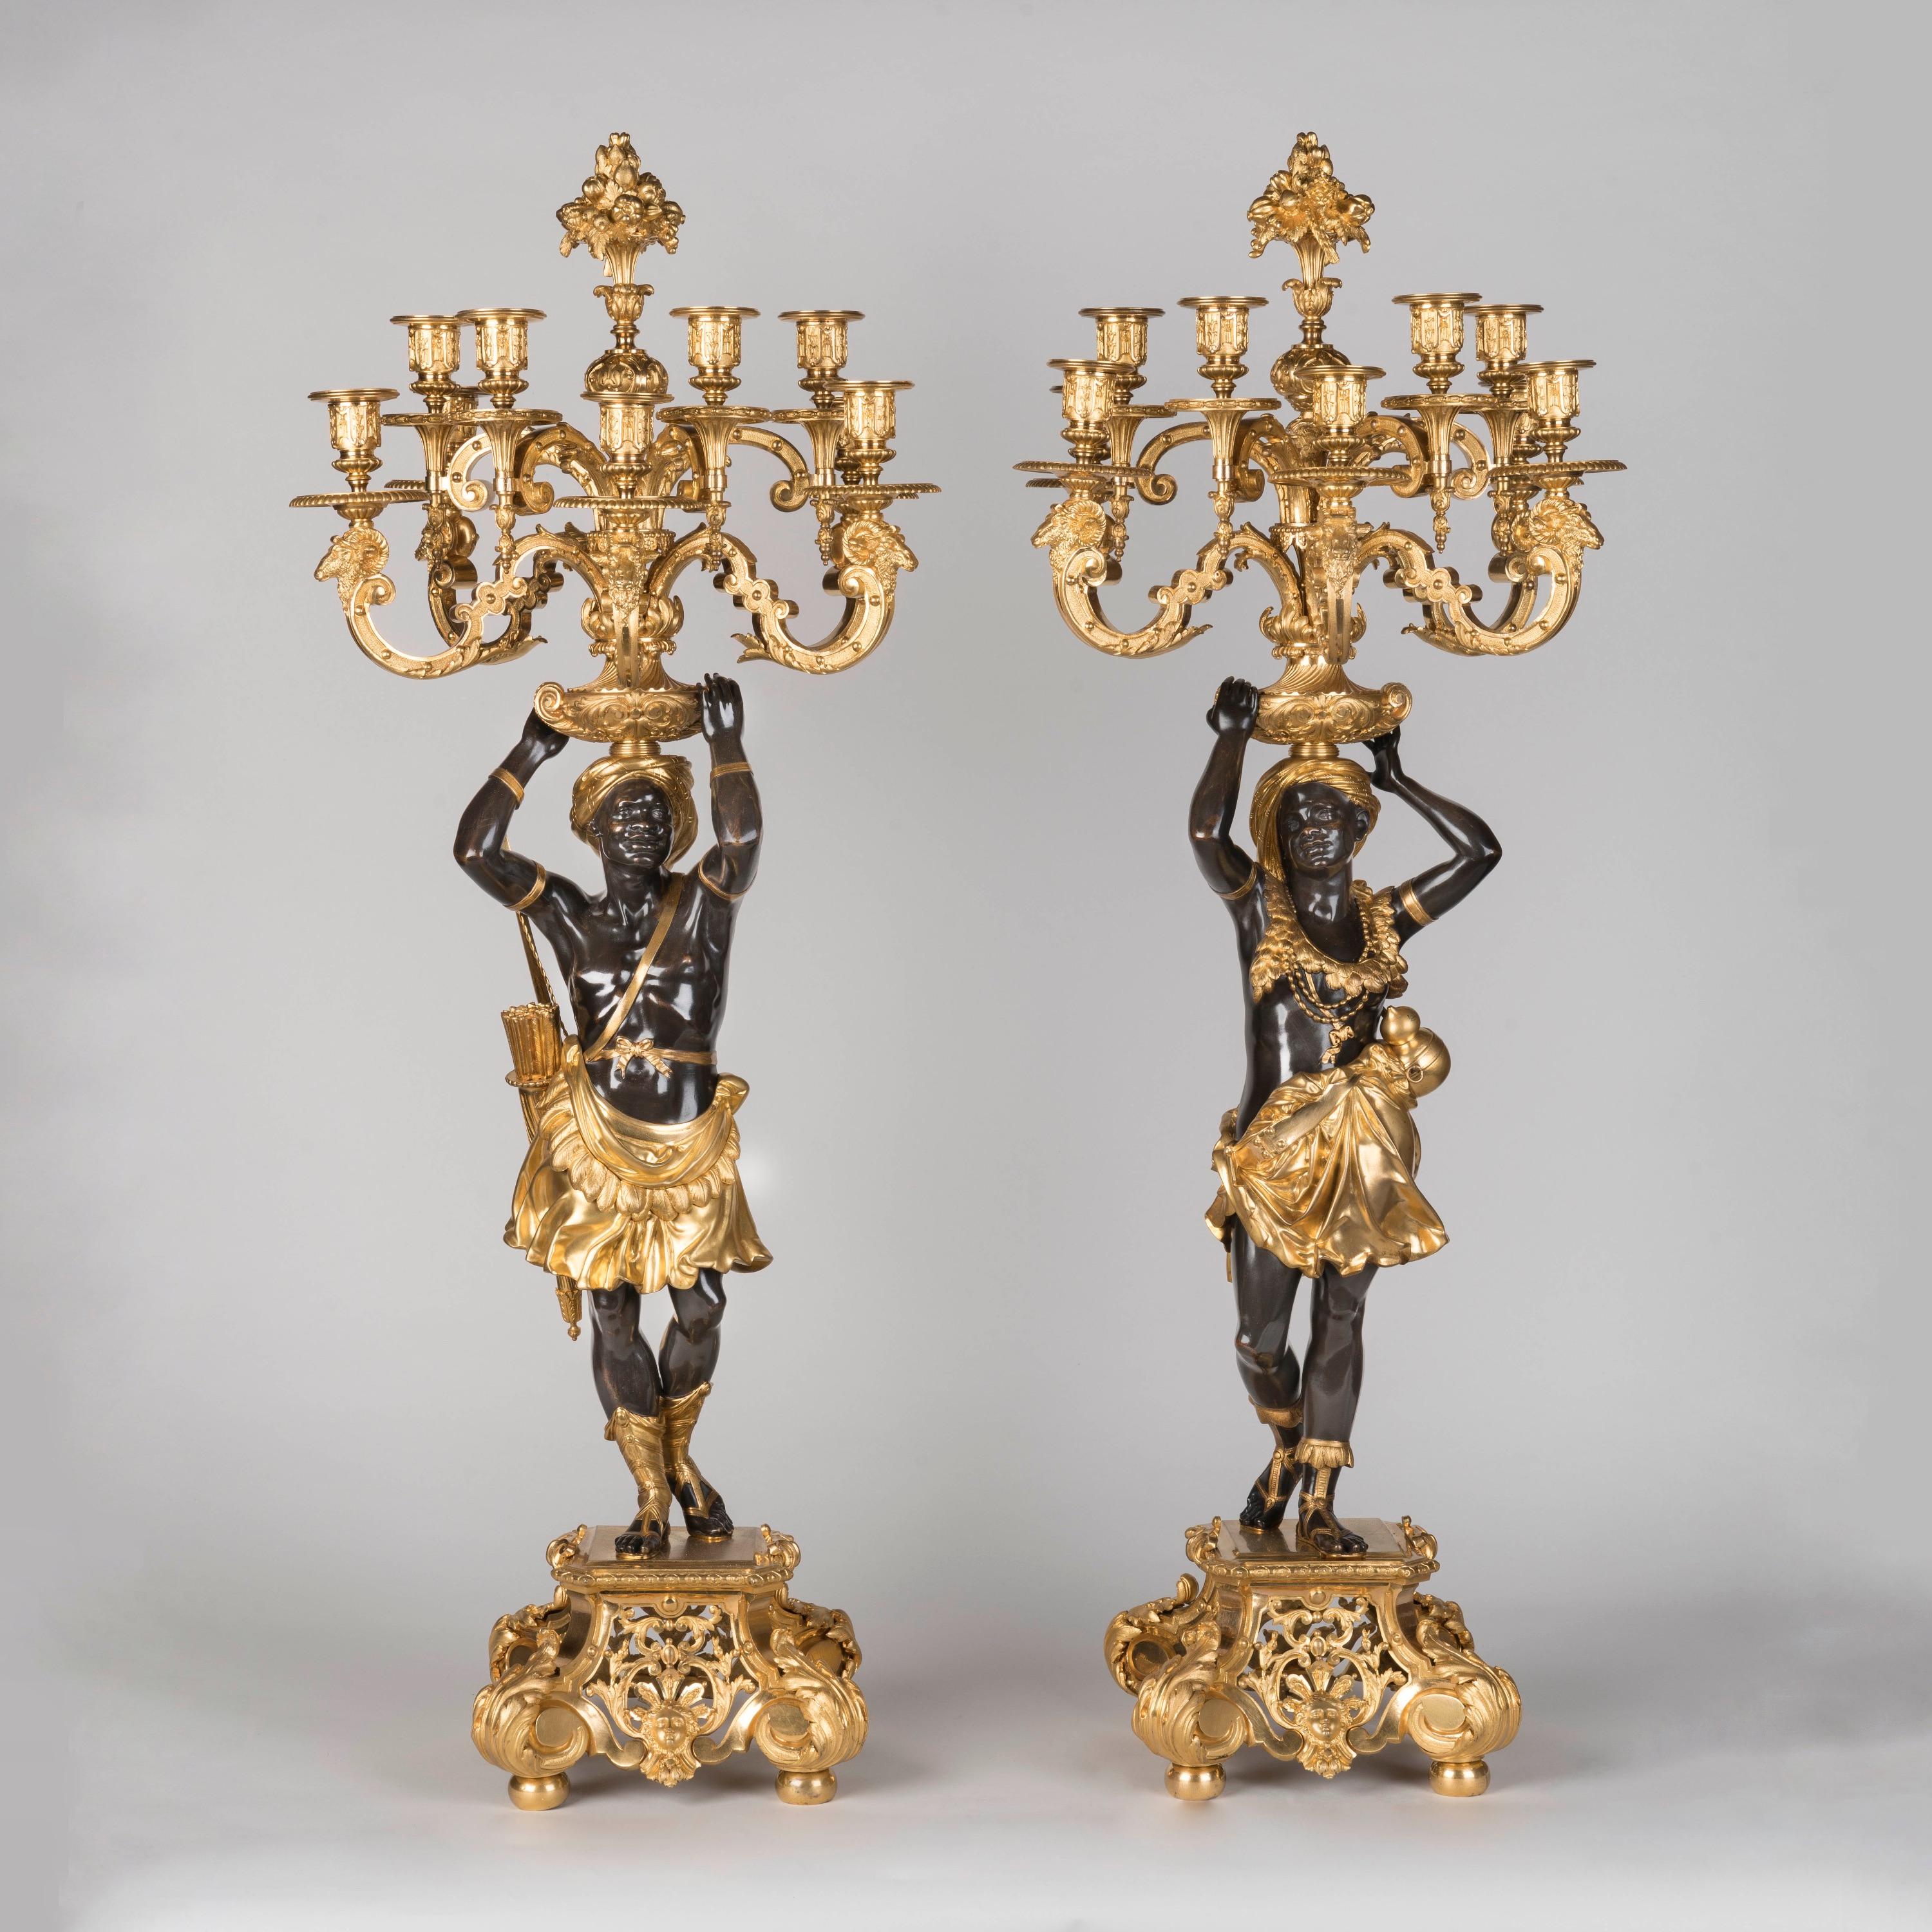 Importante paire de chandeliers figuratifs en bronze patiné et doré
Par Denière de Paris & Henri Picard

Modélisé par Carrier-Belleuse (1824-1887)

Construits en bronze patiné et doré, dans la manière Louis XIV popularisée par Jean le Pautre, les